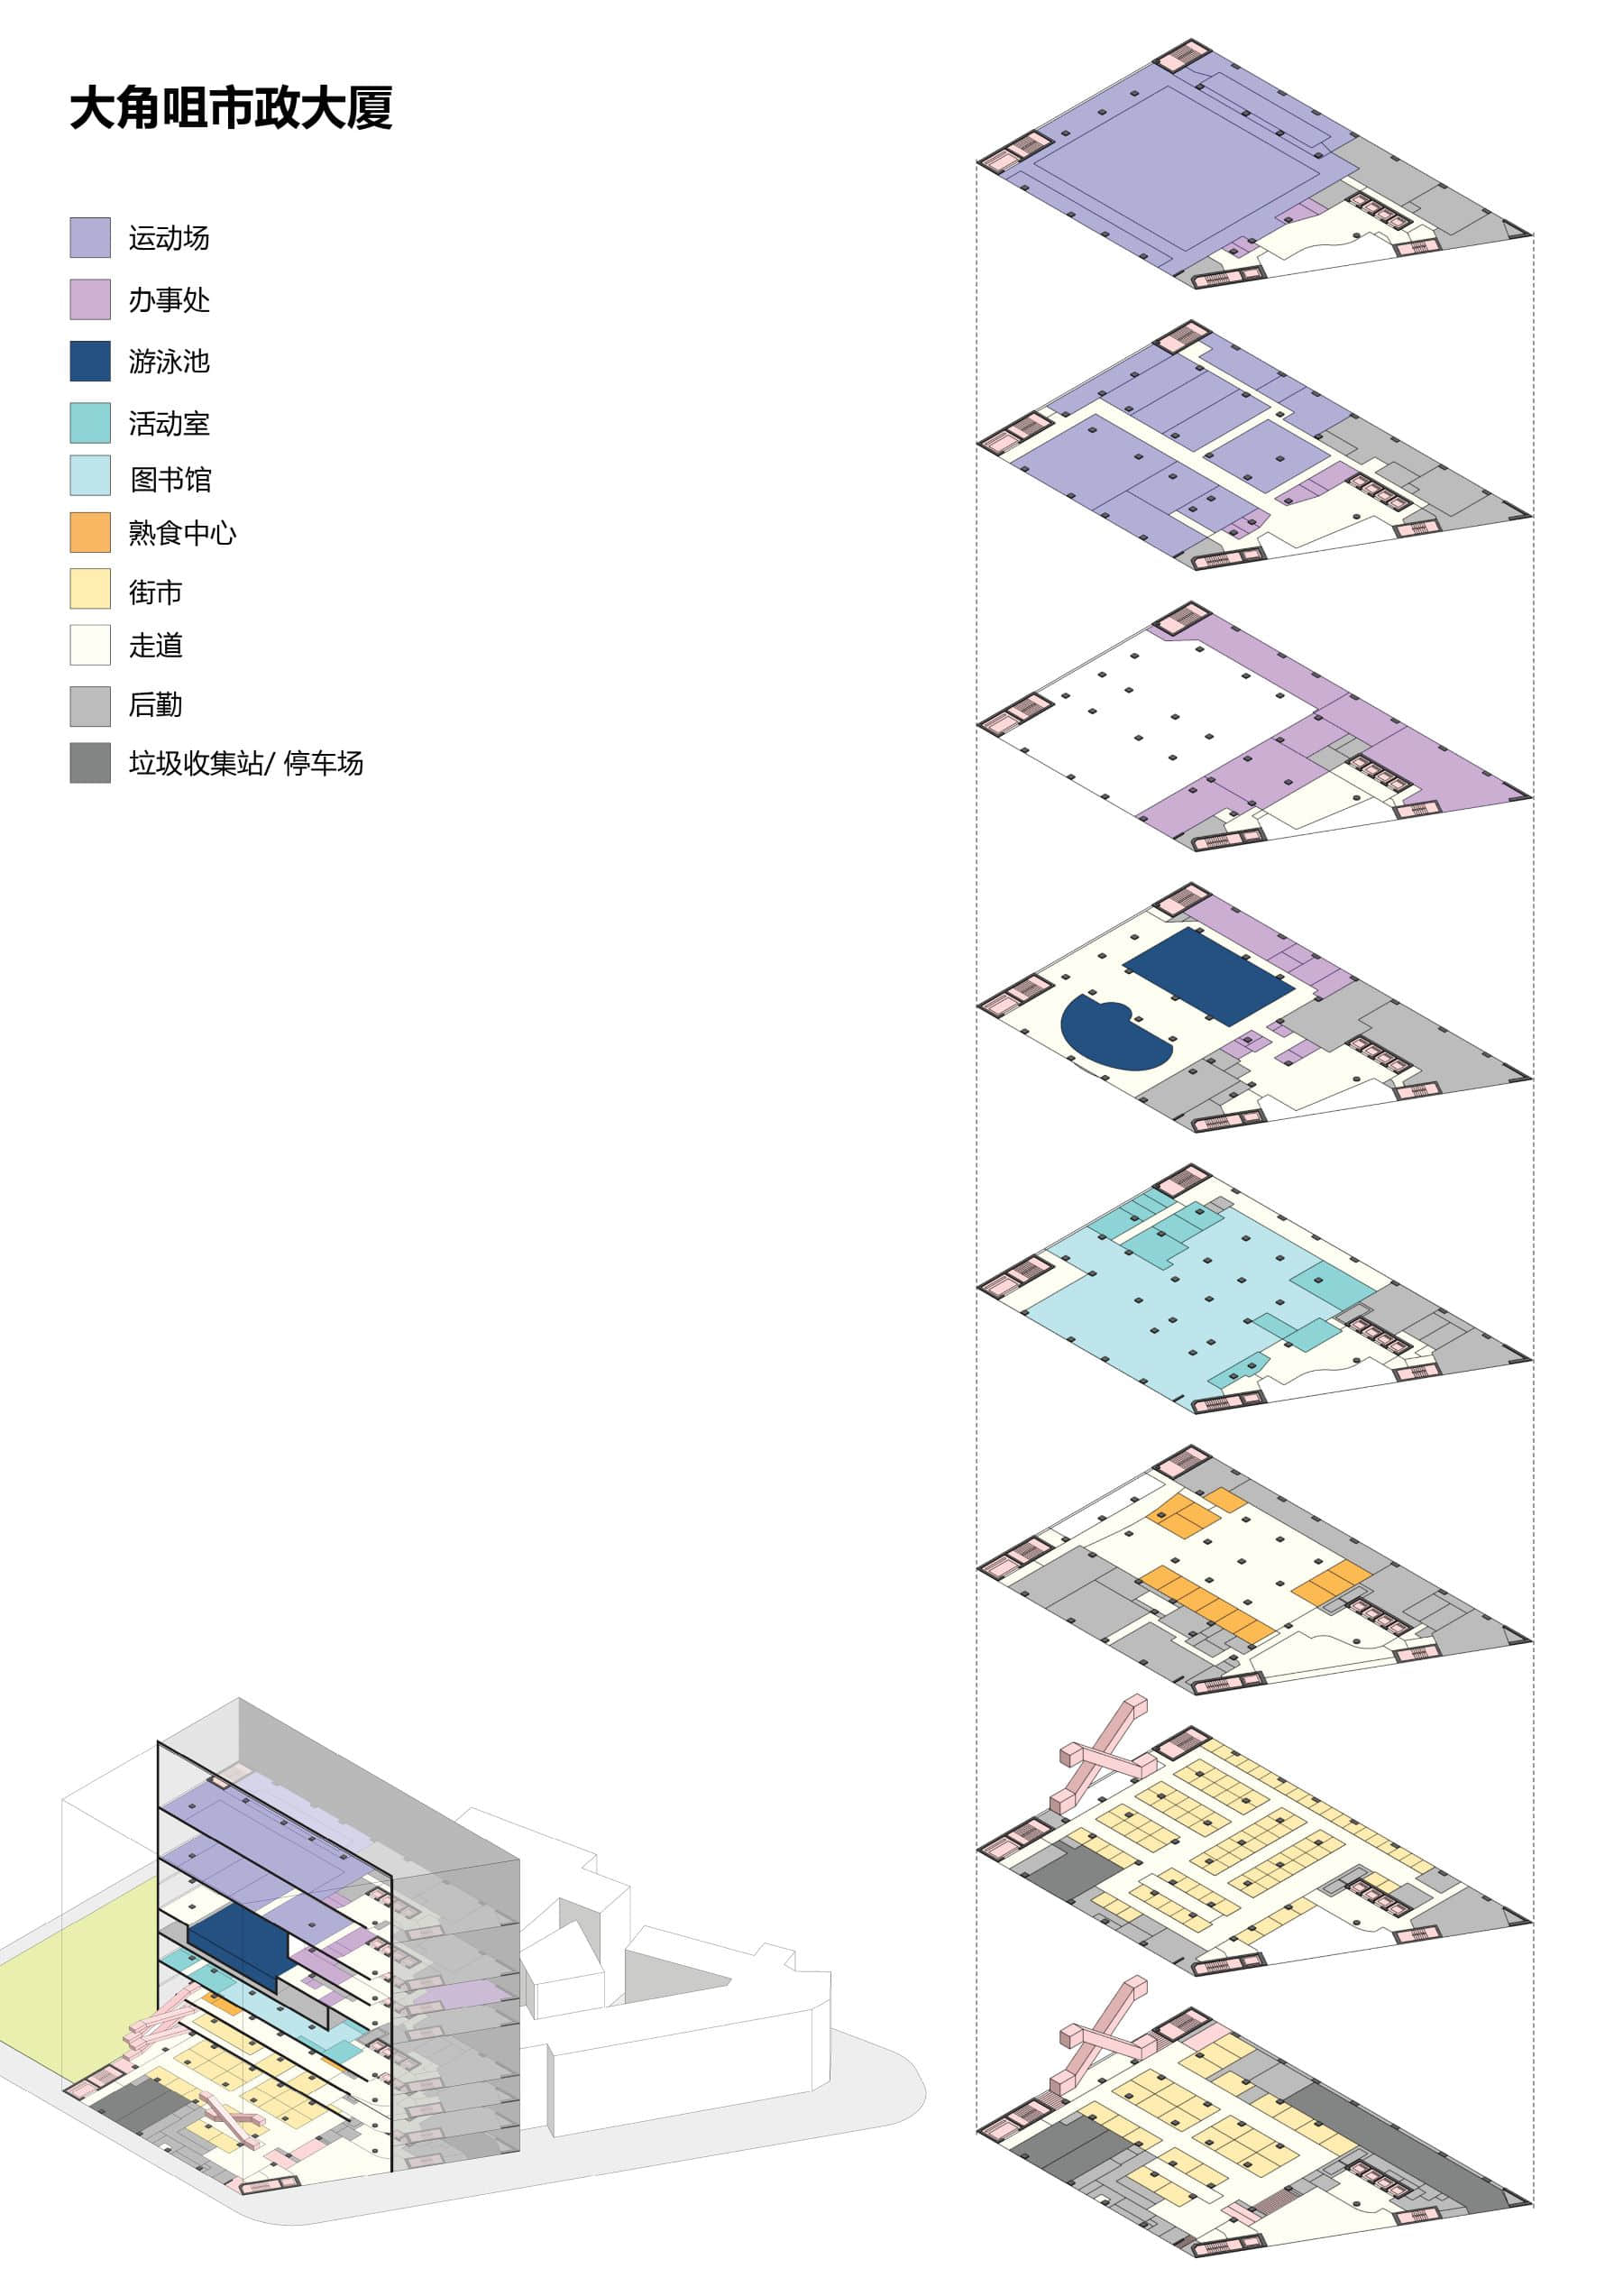 大角咀市政大厦轴测分析图 ©朱涛建筑